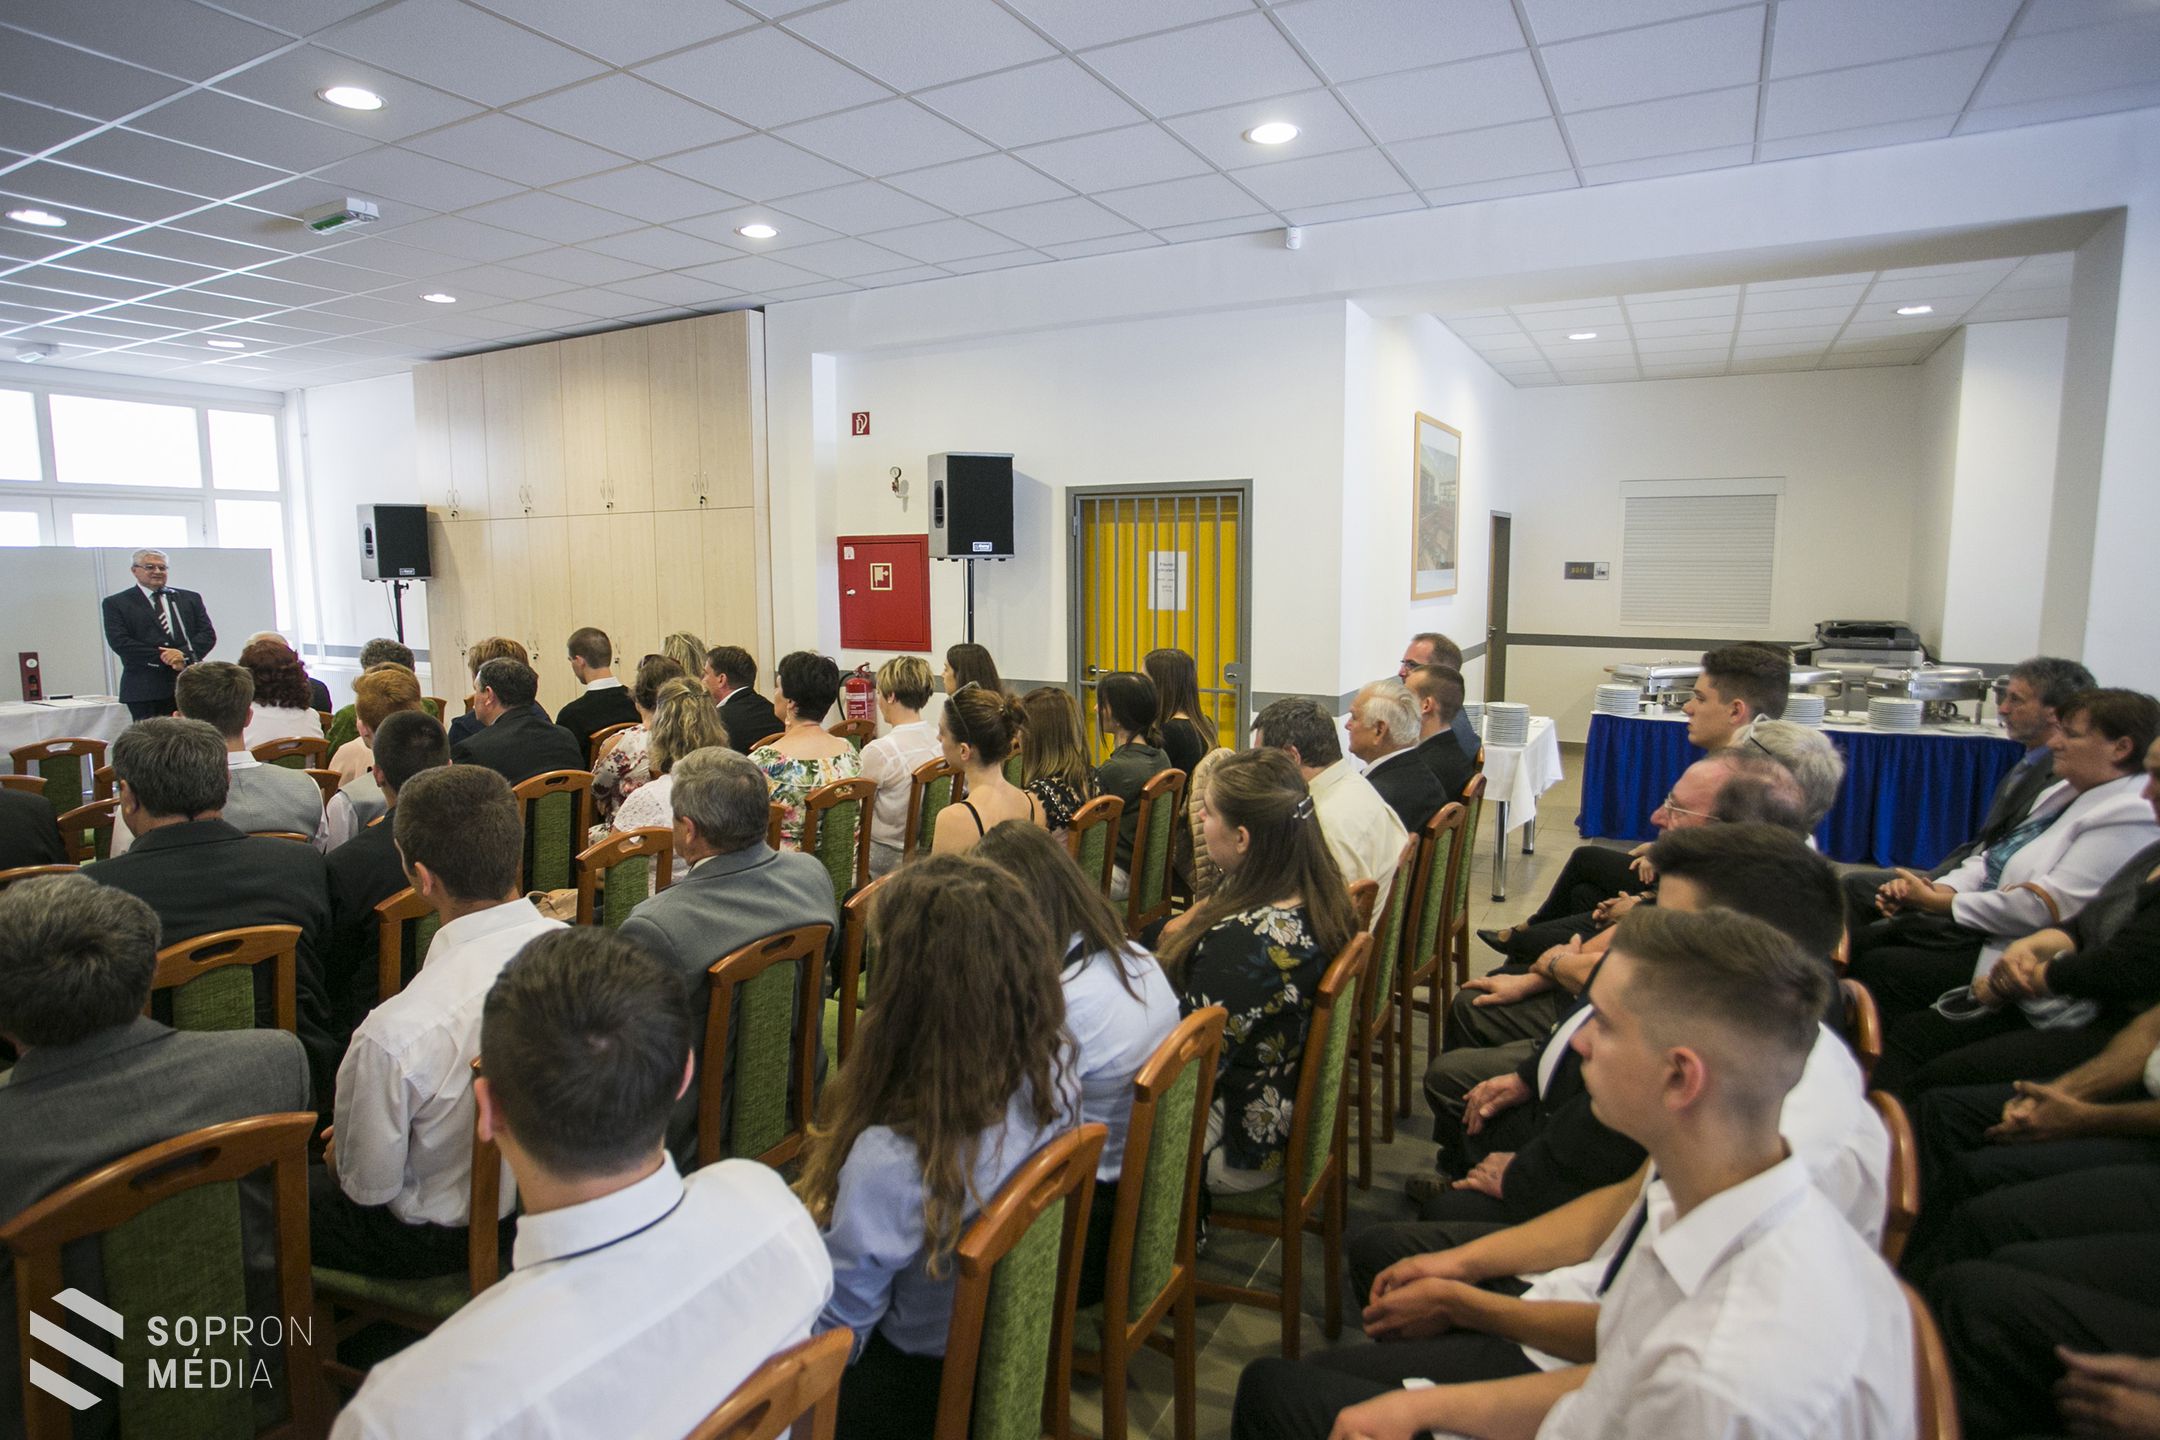 Akikre büszkék vagyunk – Sikeres tanulóit köszöntötte a Soproni Szakképzési Centrum